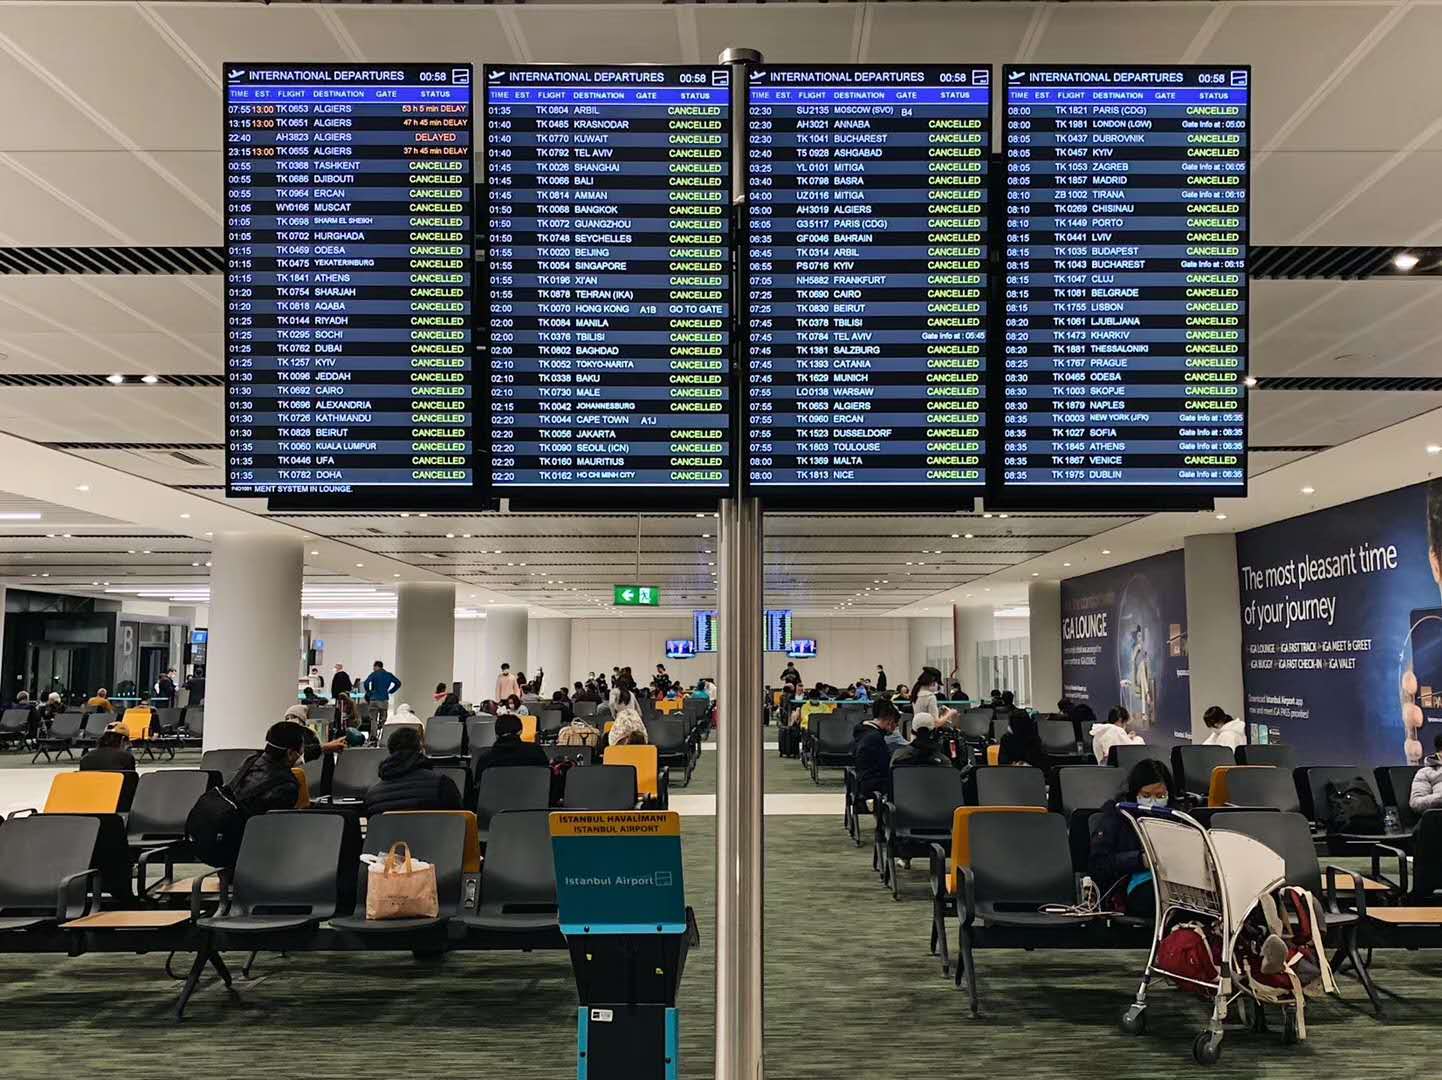  伊斯坦布尔机场大屏幕上显示大量延迟、取消的航班。